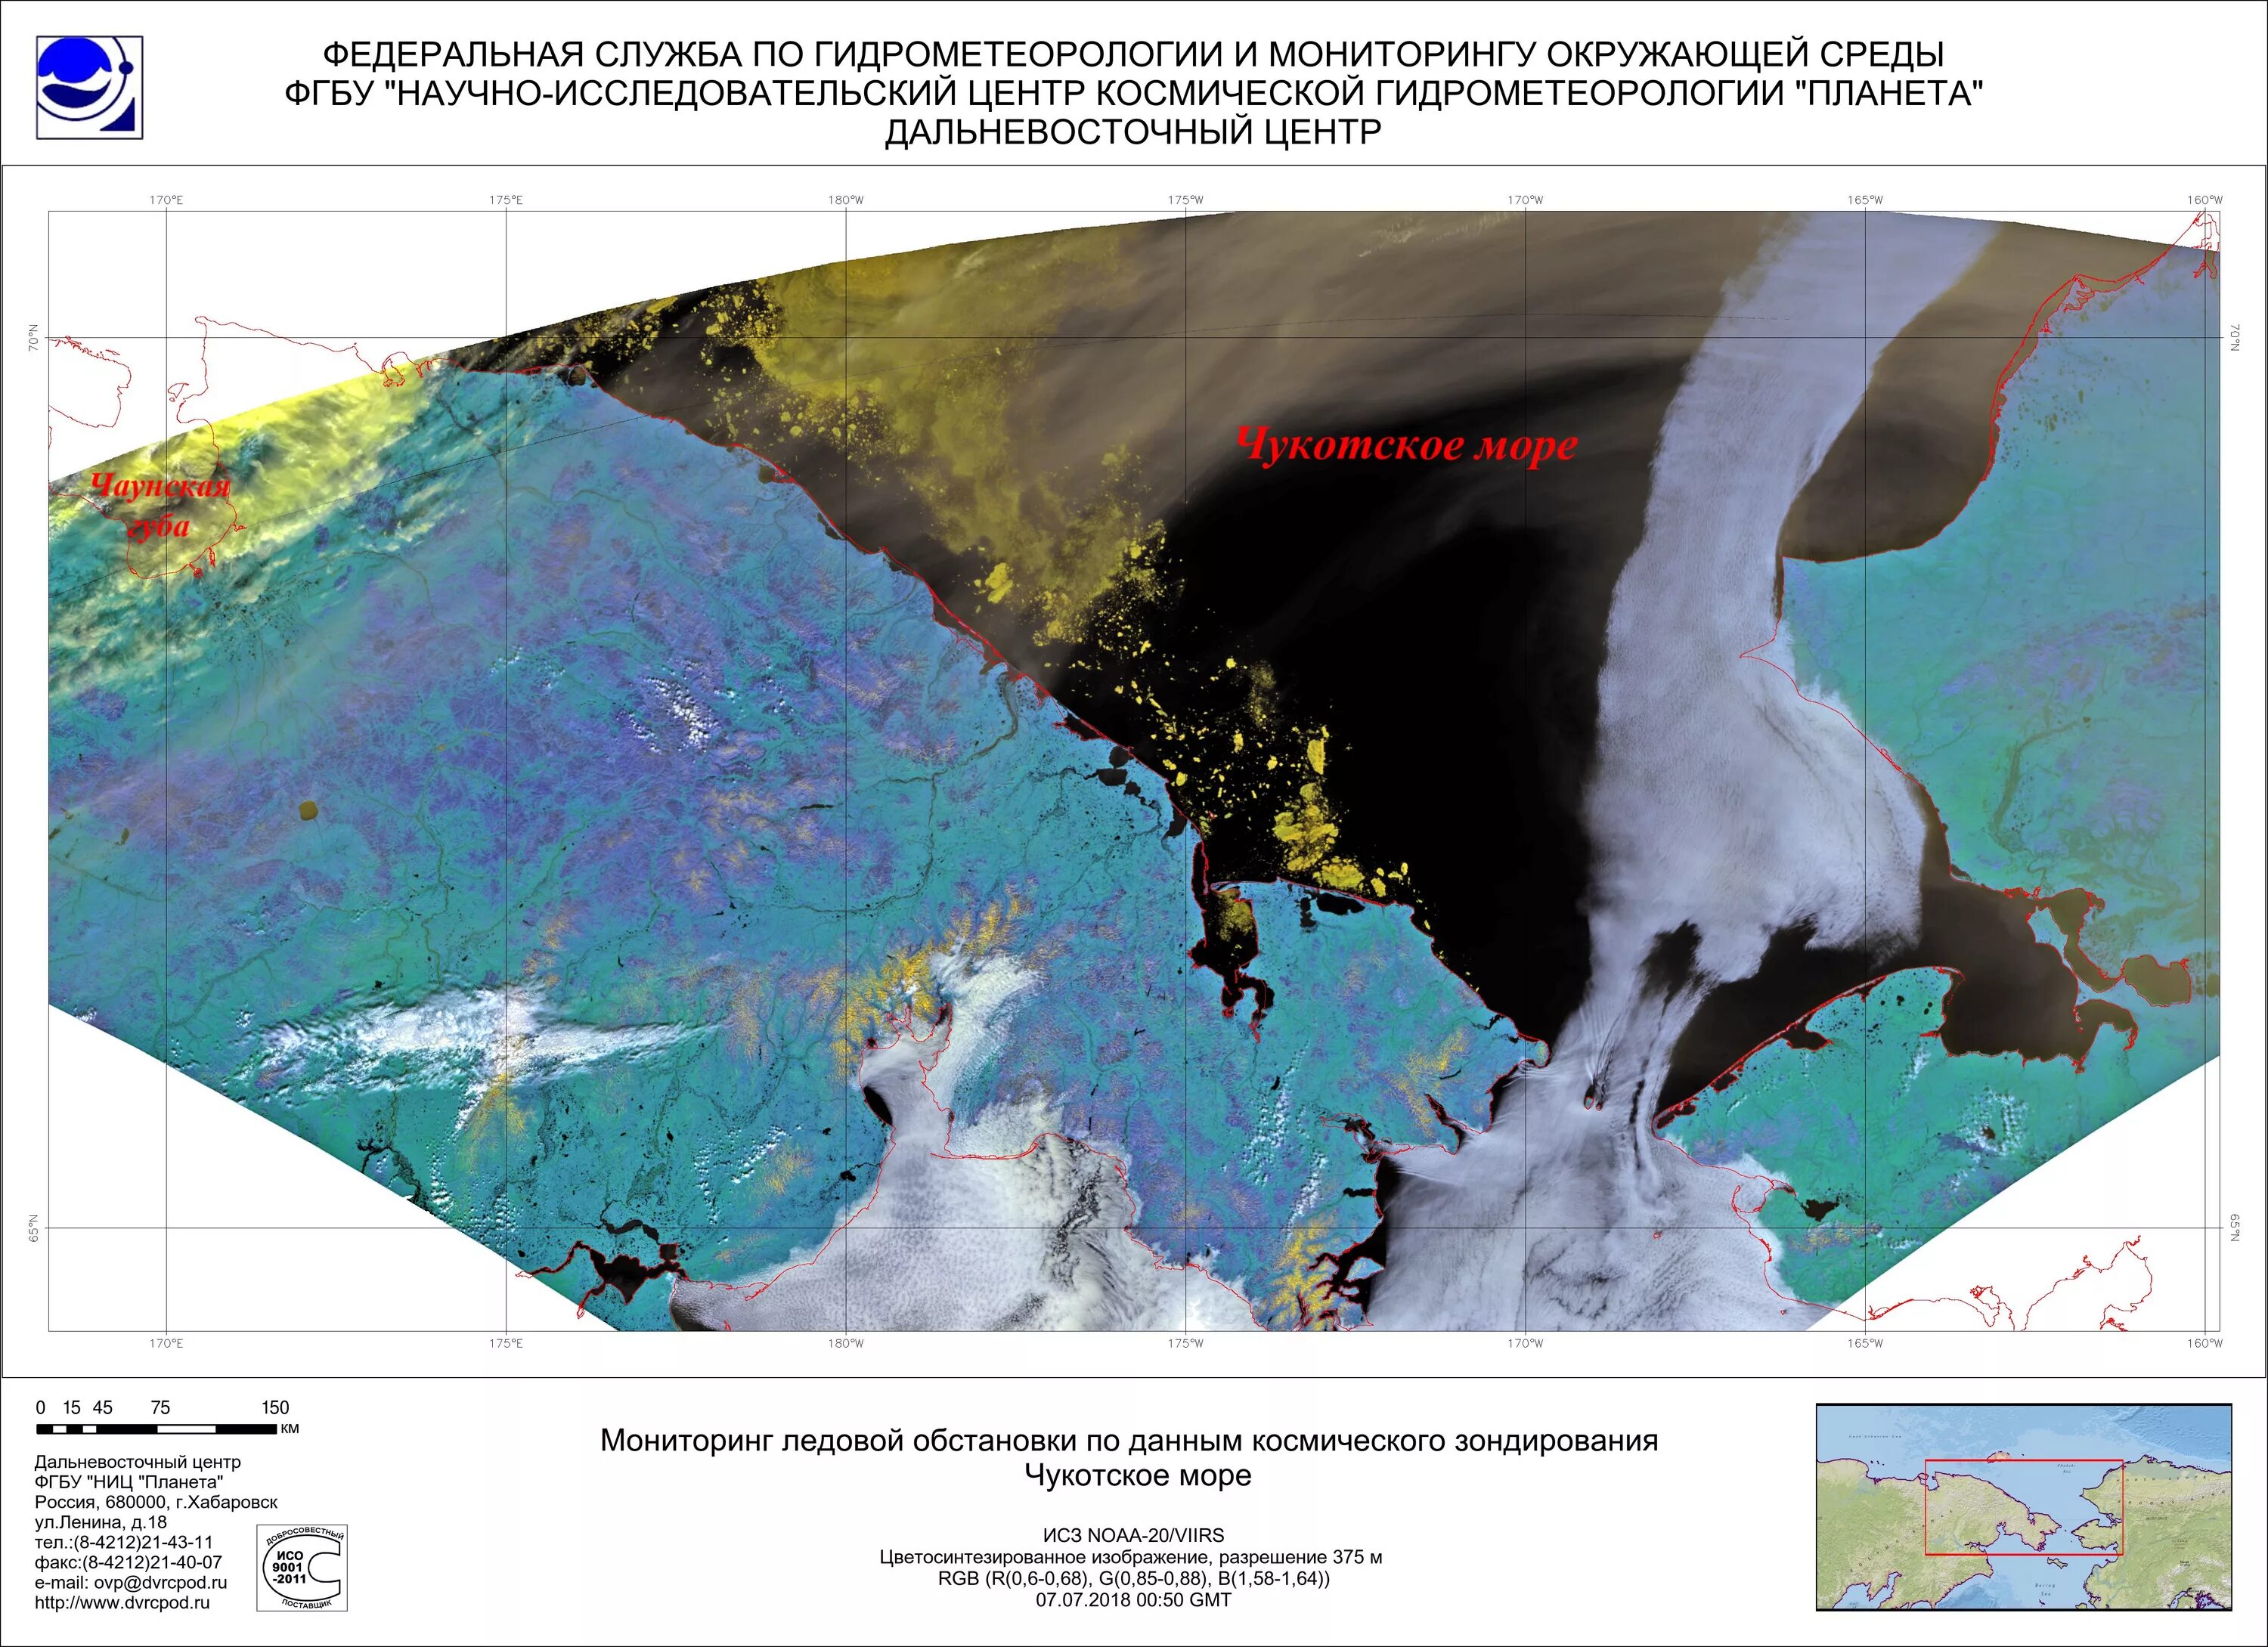 Изучение ледовой обстановки. Спутниковый мониторинг ледовой обстановки. Ледовая карта Северного Ледовитого океана. Ледовая обстановка Северного Ледовитого океана. Ледовая обстановка северных морей.